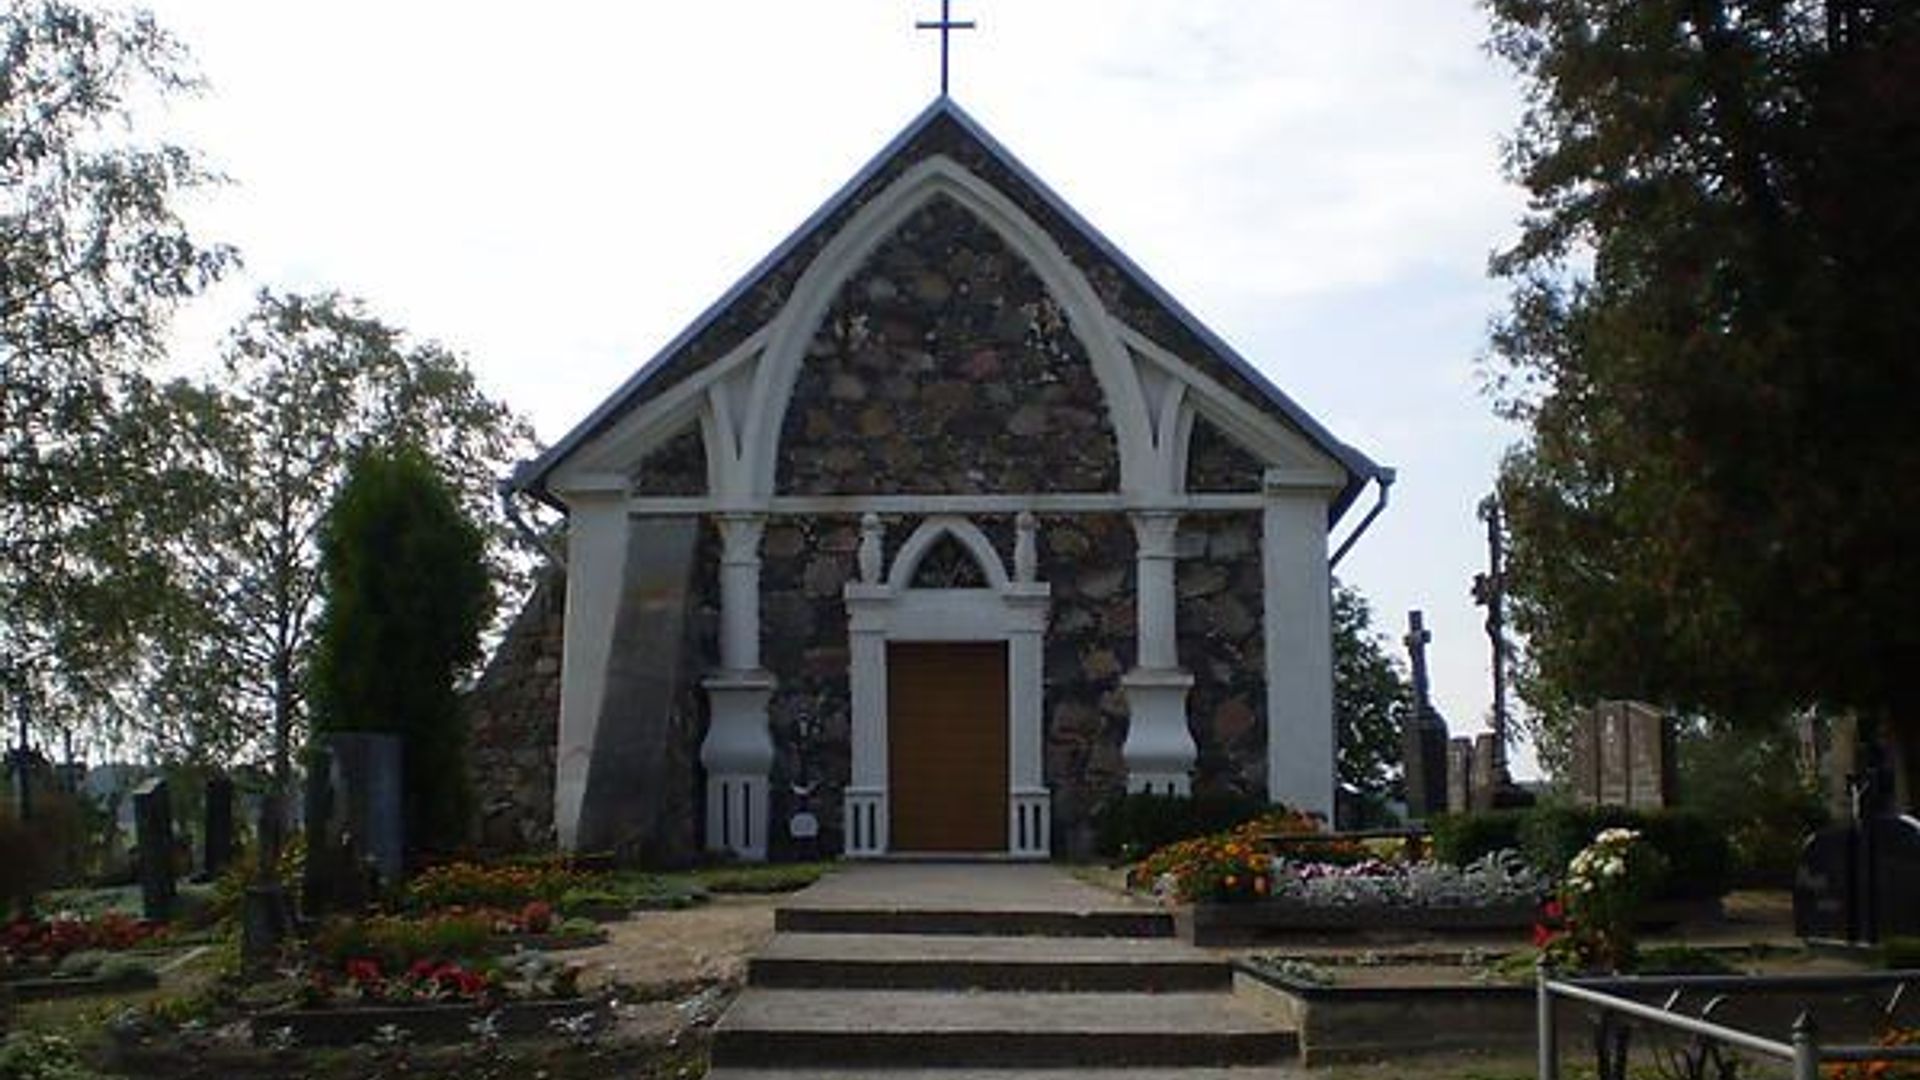 Alksniupiai Chapel